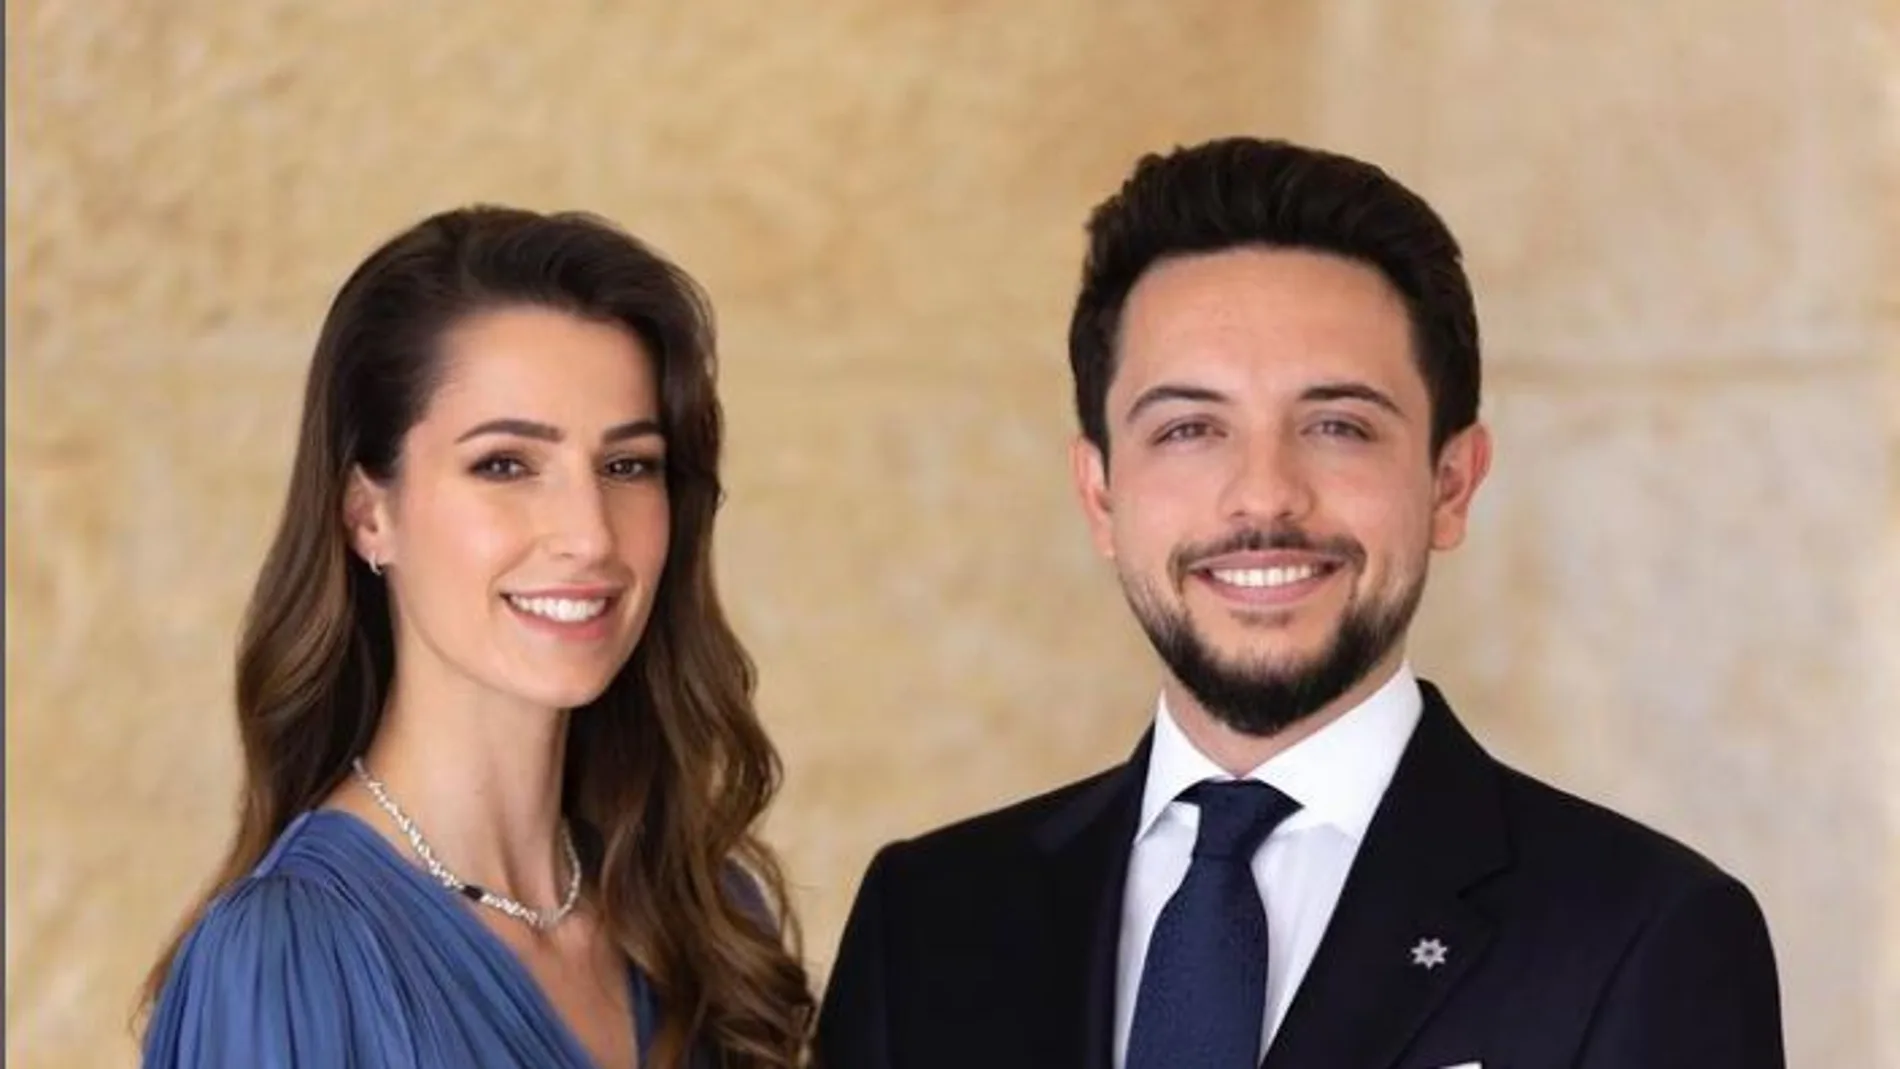 El príncipe Hussein, hijo de los reyes Abdalá II y Rania de Jordania, se ha comprometido con Rajwa al-Saif